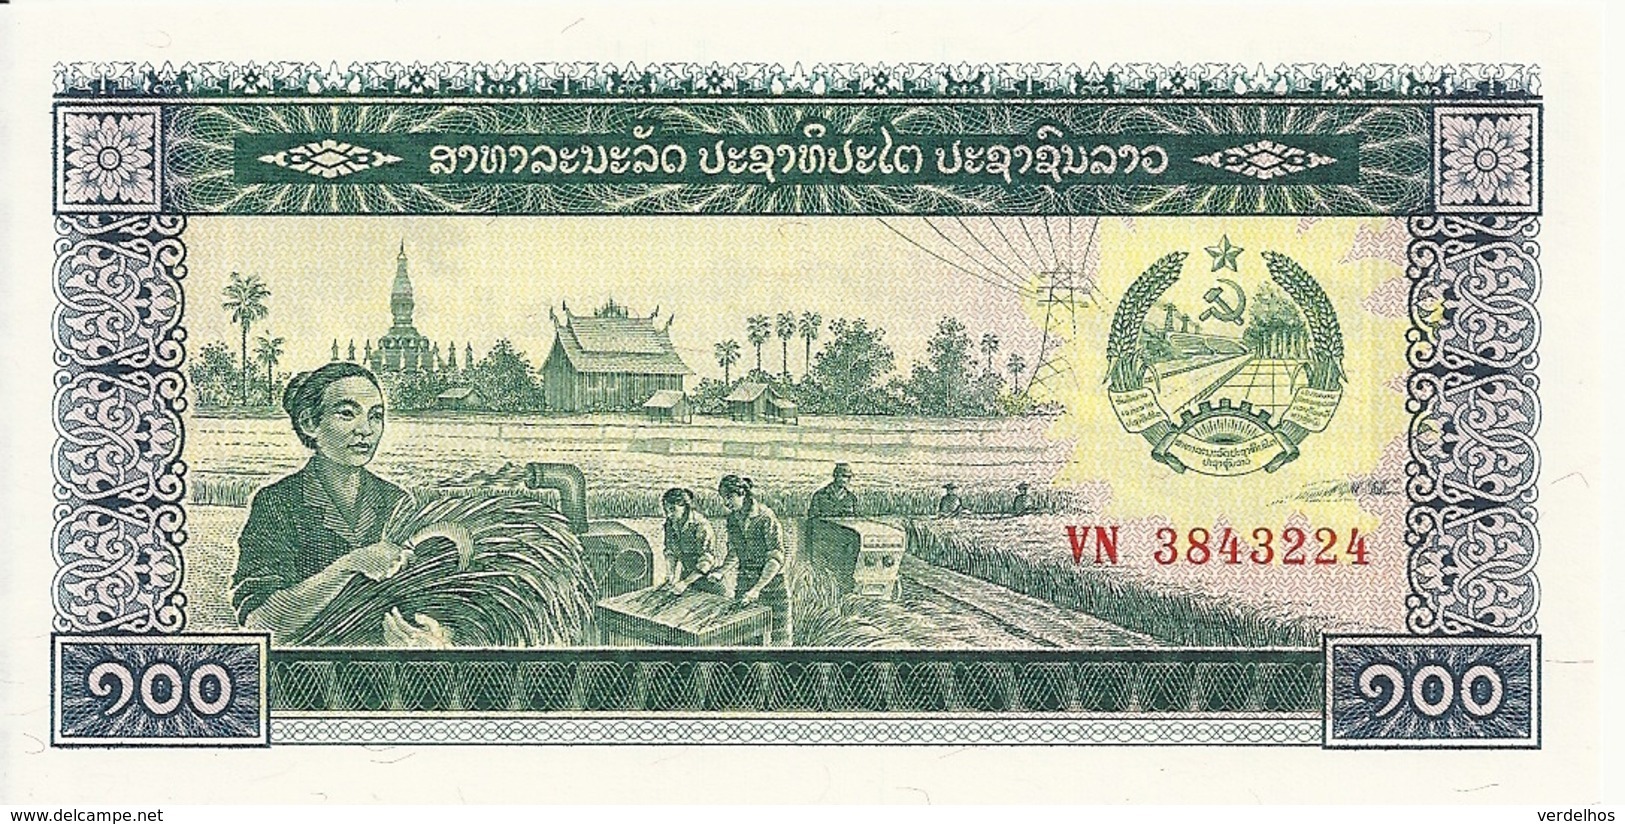 LAOS 100 KIP ND1979 UNC P 30 - Laos